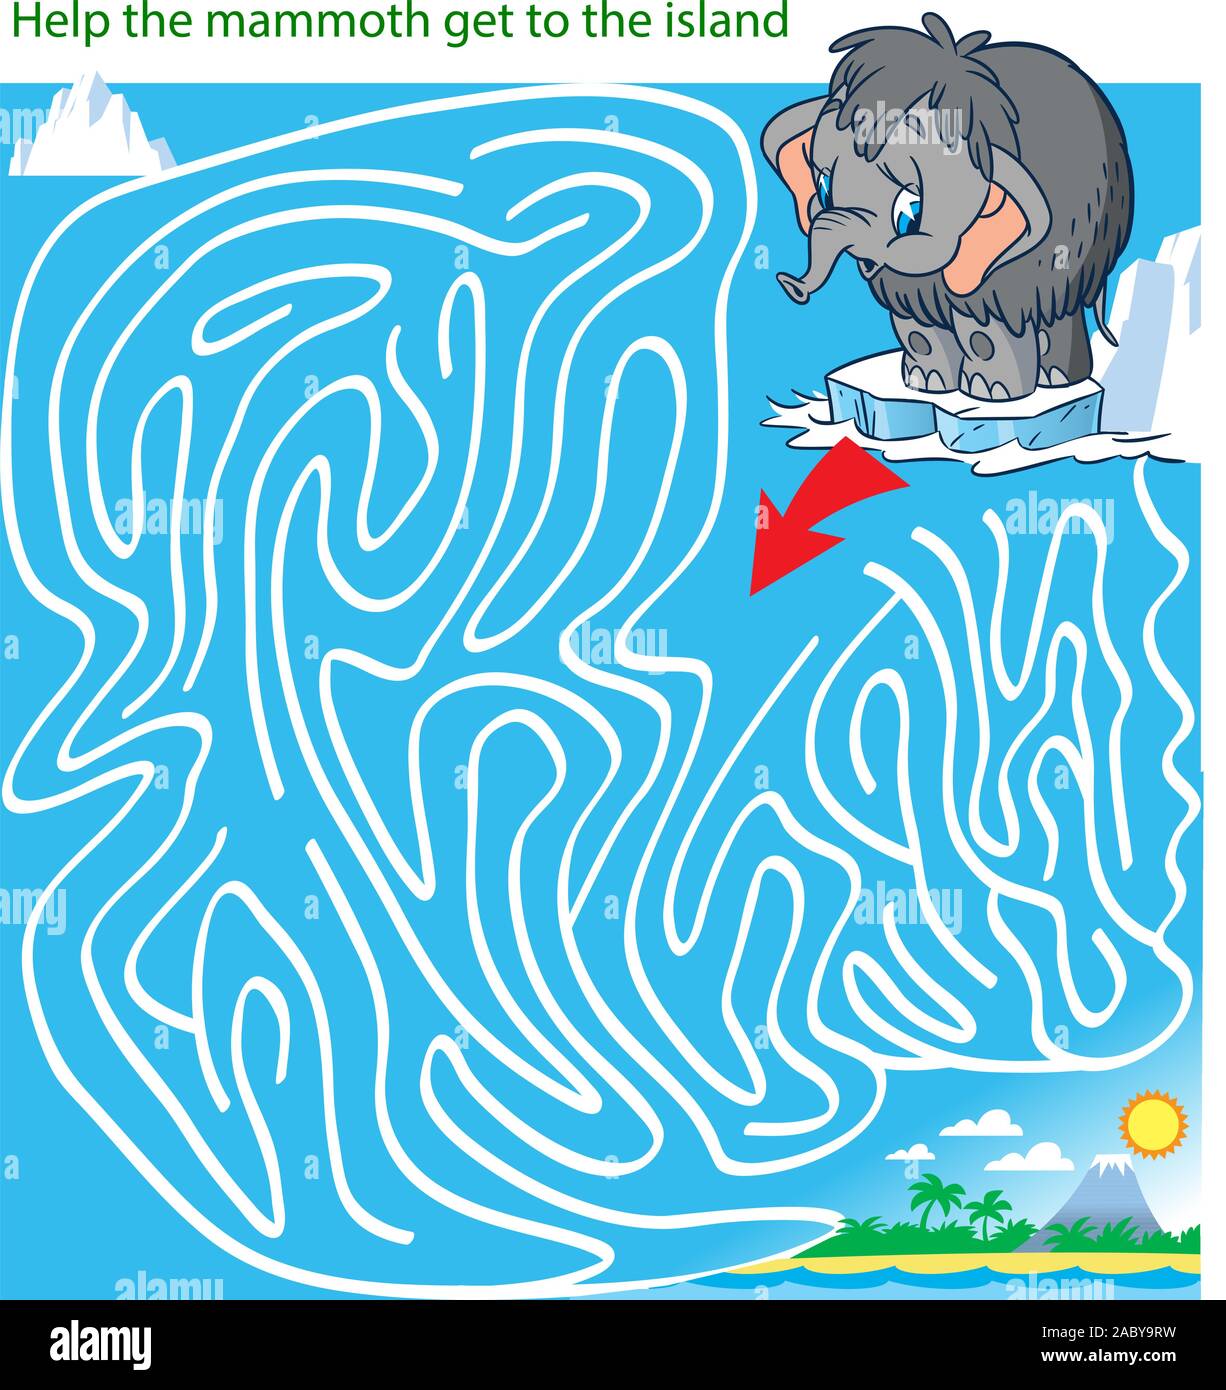 Vector Illustration mit einem Puzzlespiel, in dem es erforderlich ist, den Mammoth auf die Insel zu bringen, Ihnen dabei zu helfen Stock Vektor